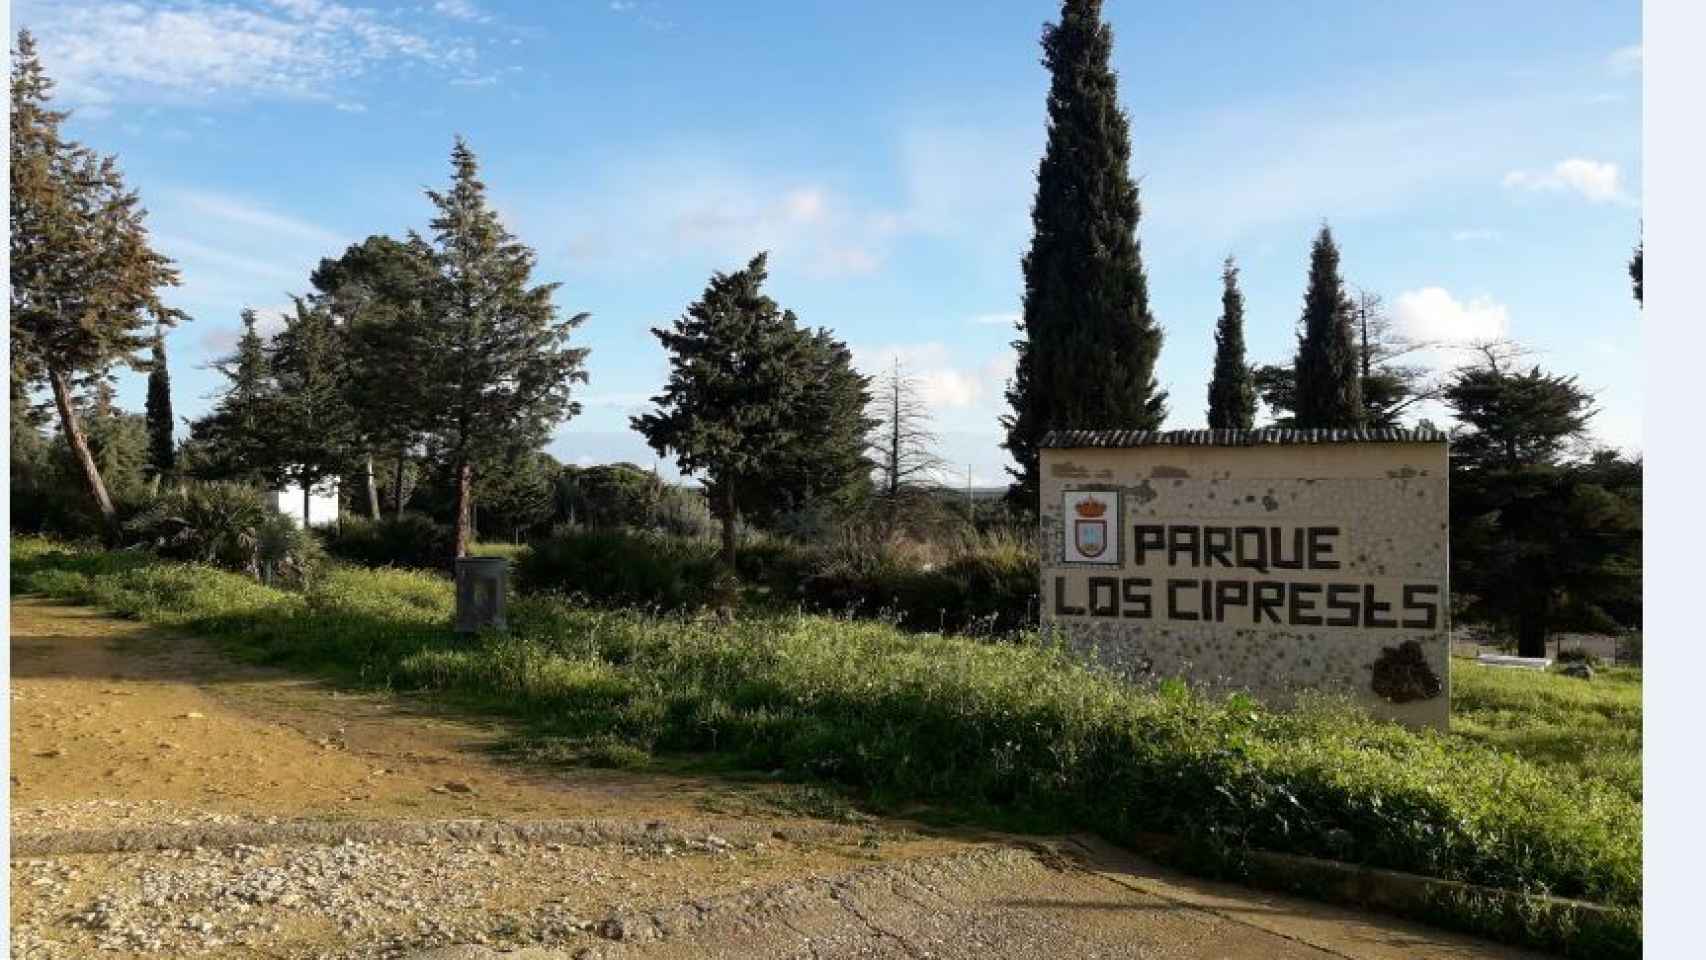 Parque de Los Cipreses en el que atacó a una joven de El Campillo durante un permiso penitenciario